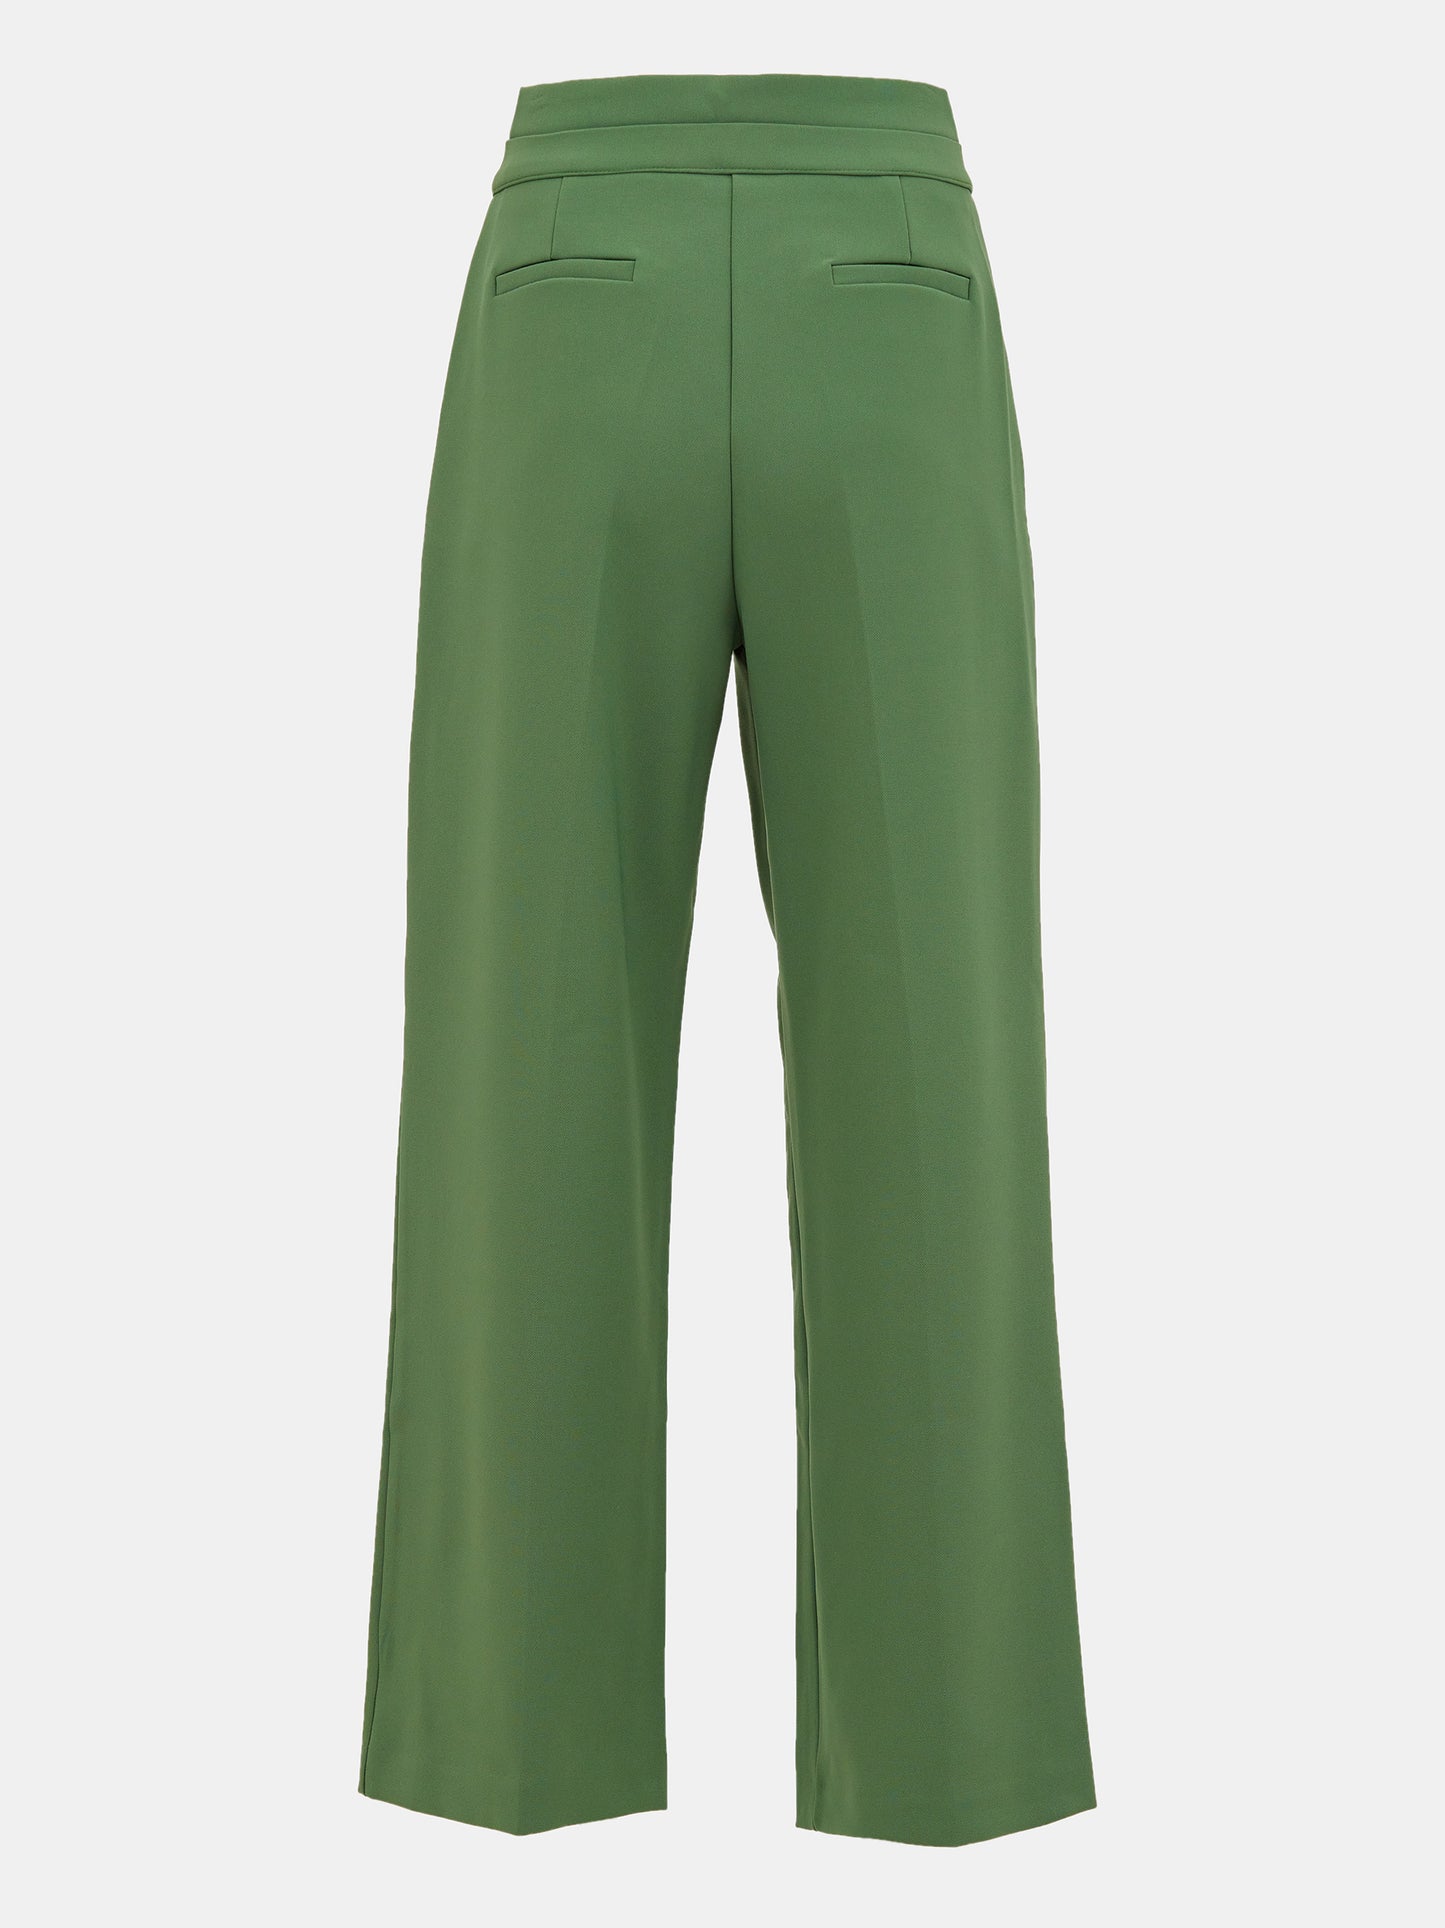 Double-Waistline Trousers, Peale Green